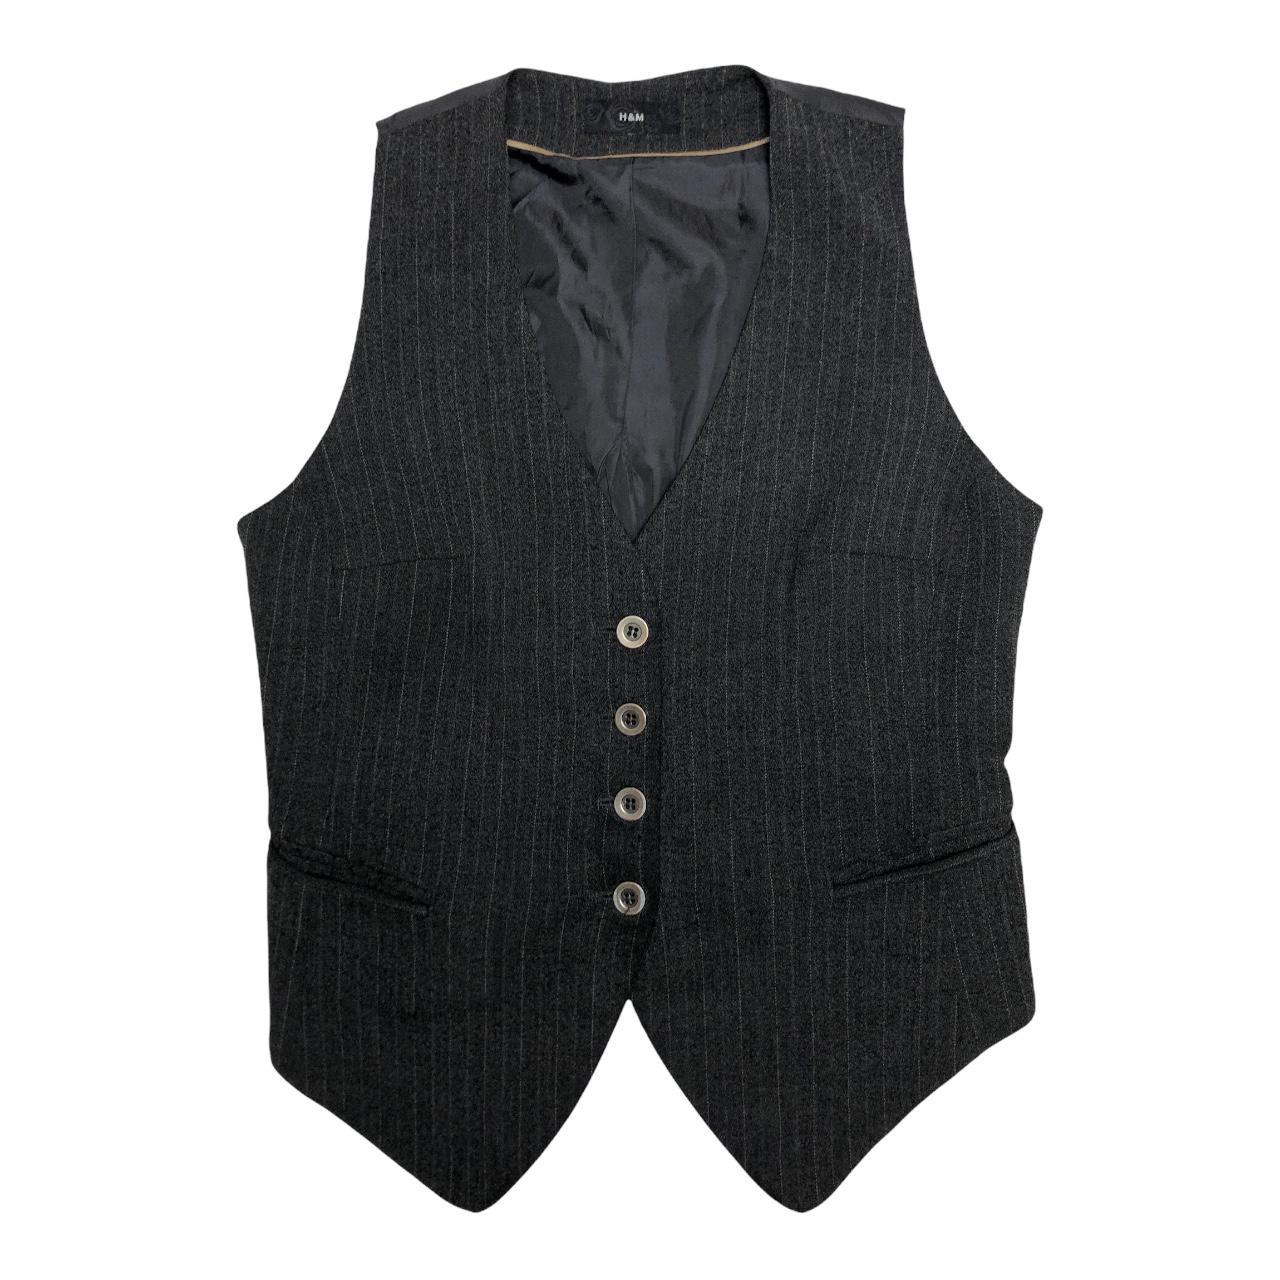 00s grey pinstripe waistcoat adjustable vest top... - Depop